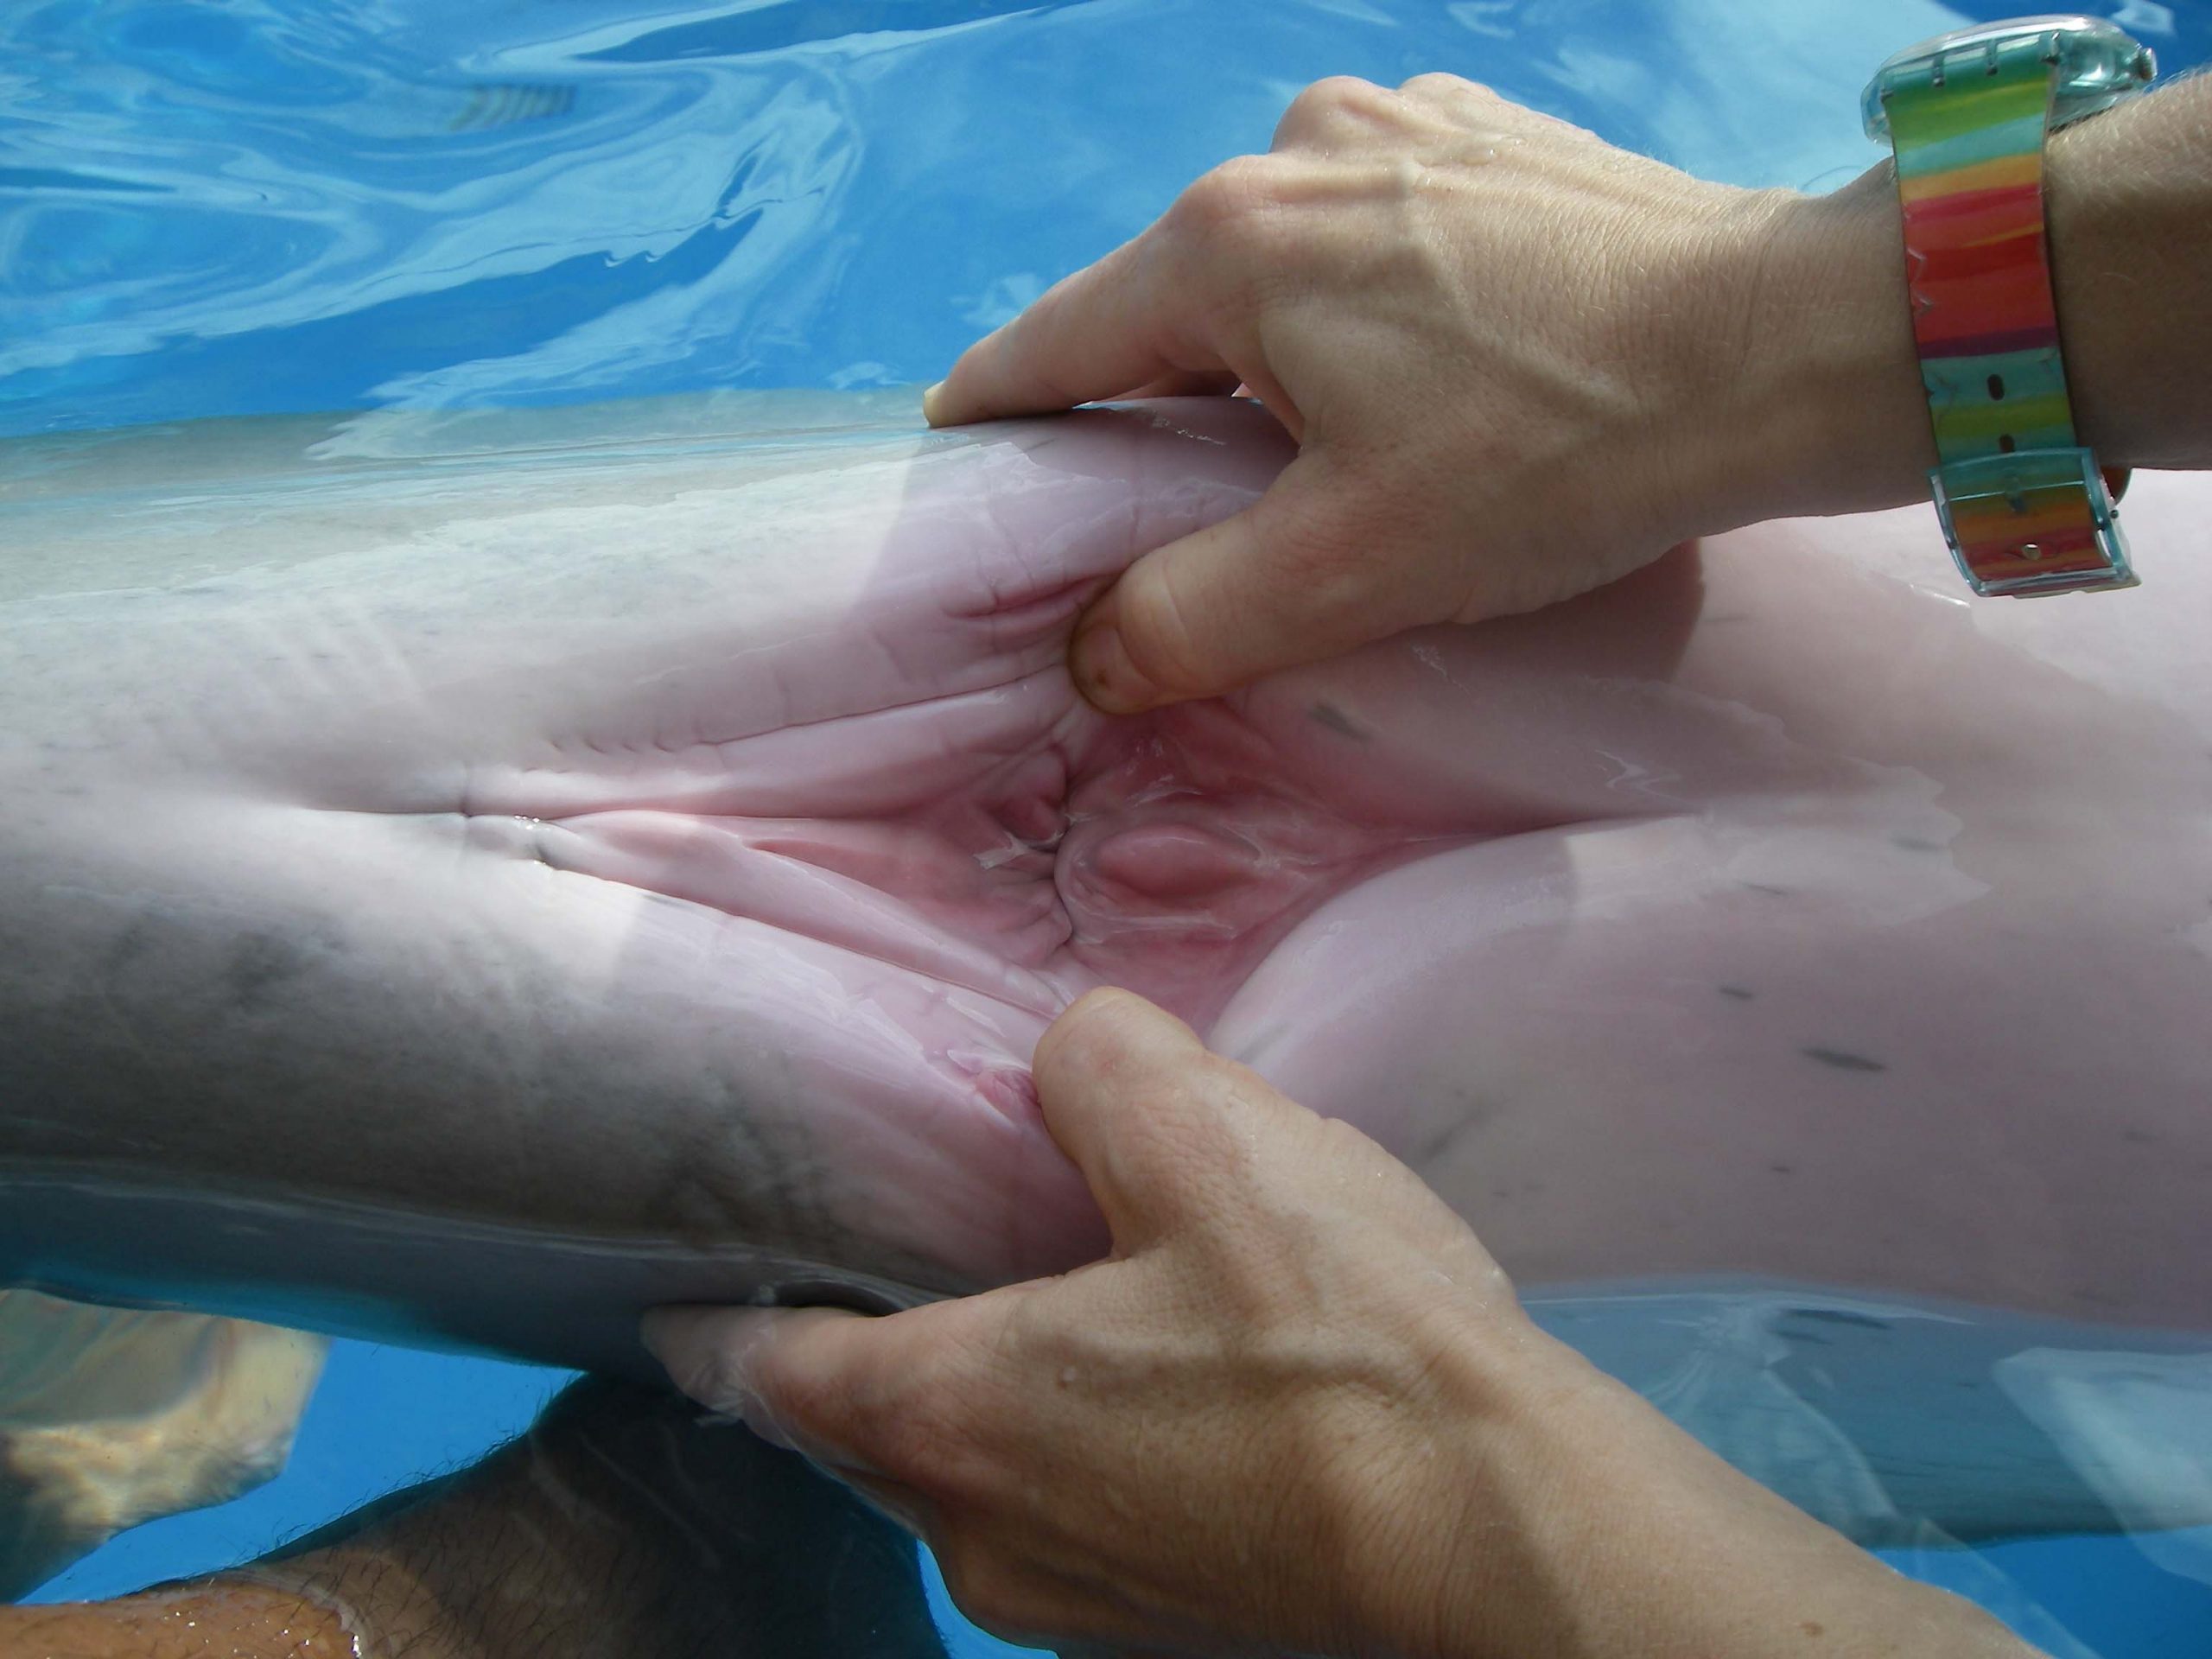 член дельфина в девушке фото 1